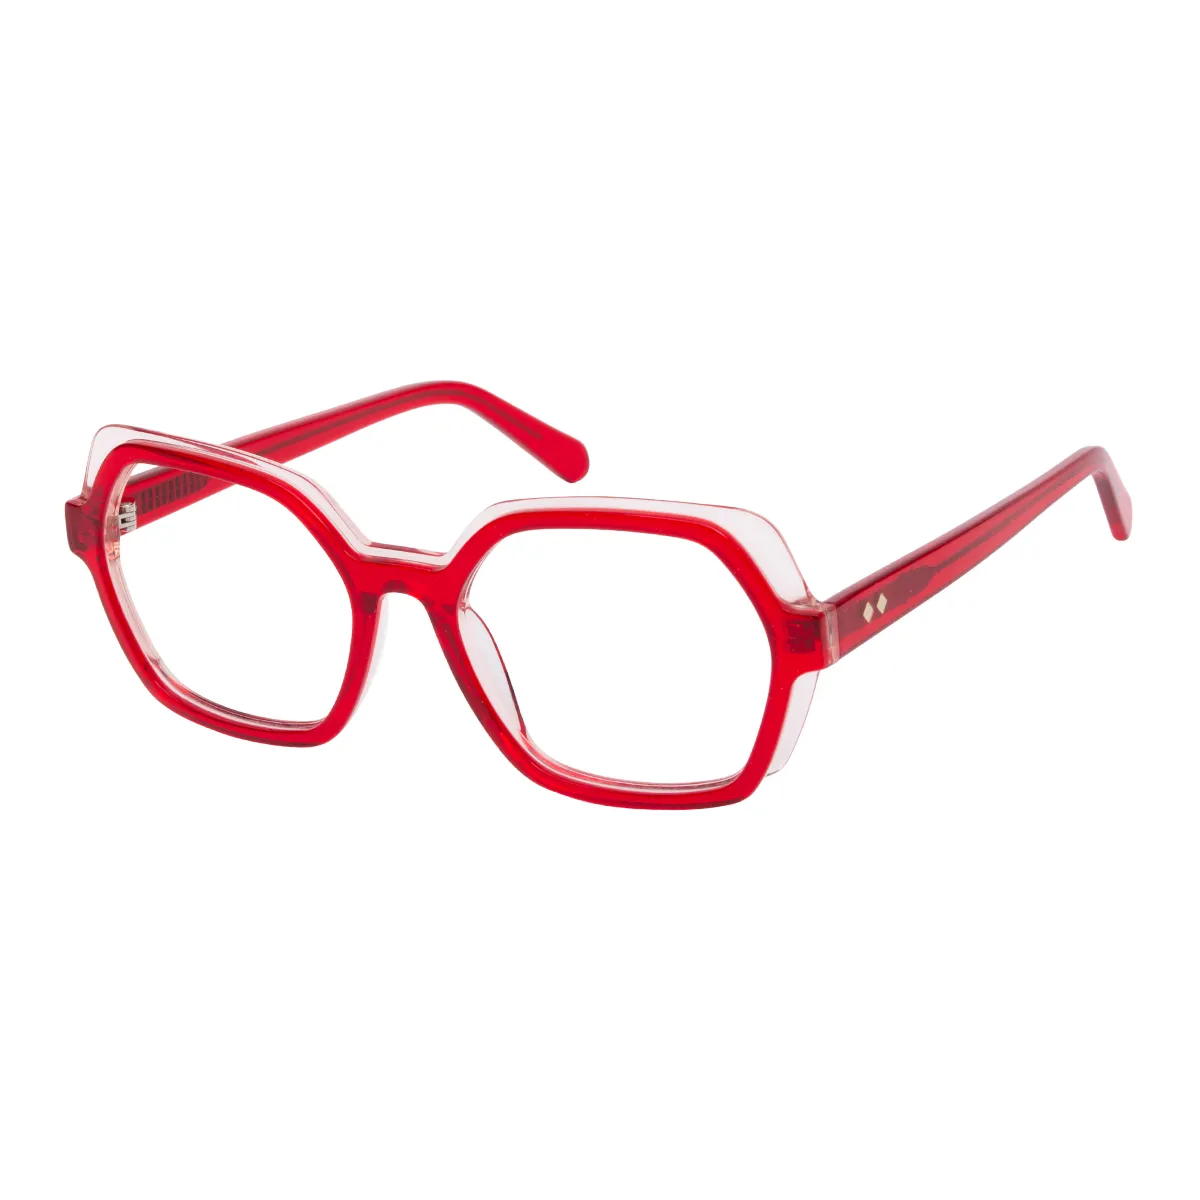 Zelenko - Square Red-Pink Glasses for Women